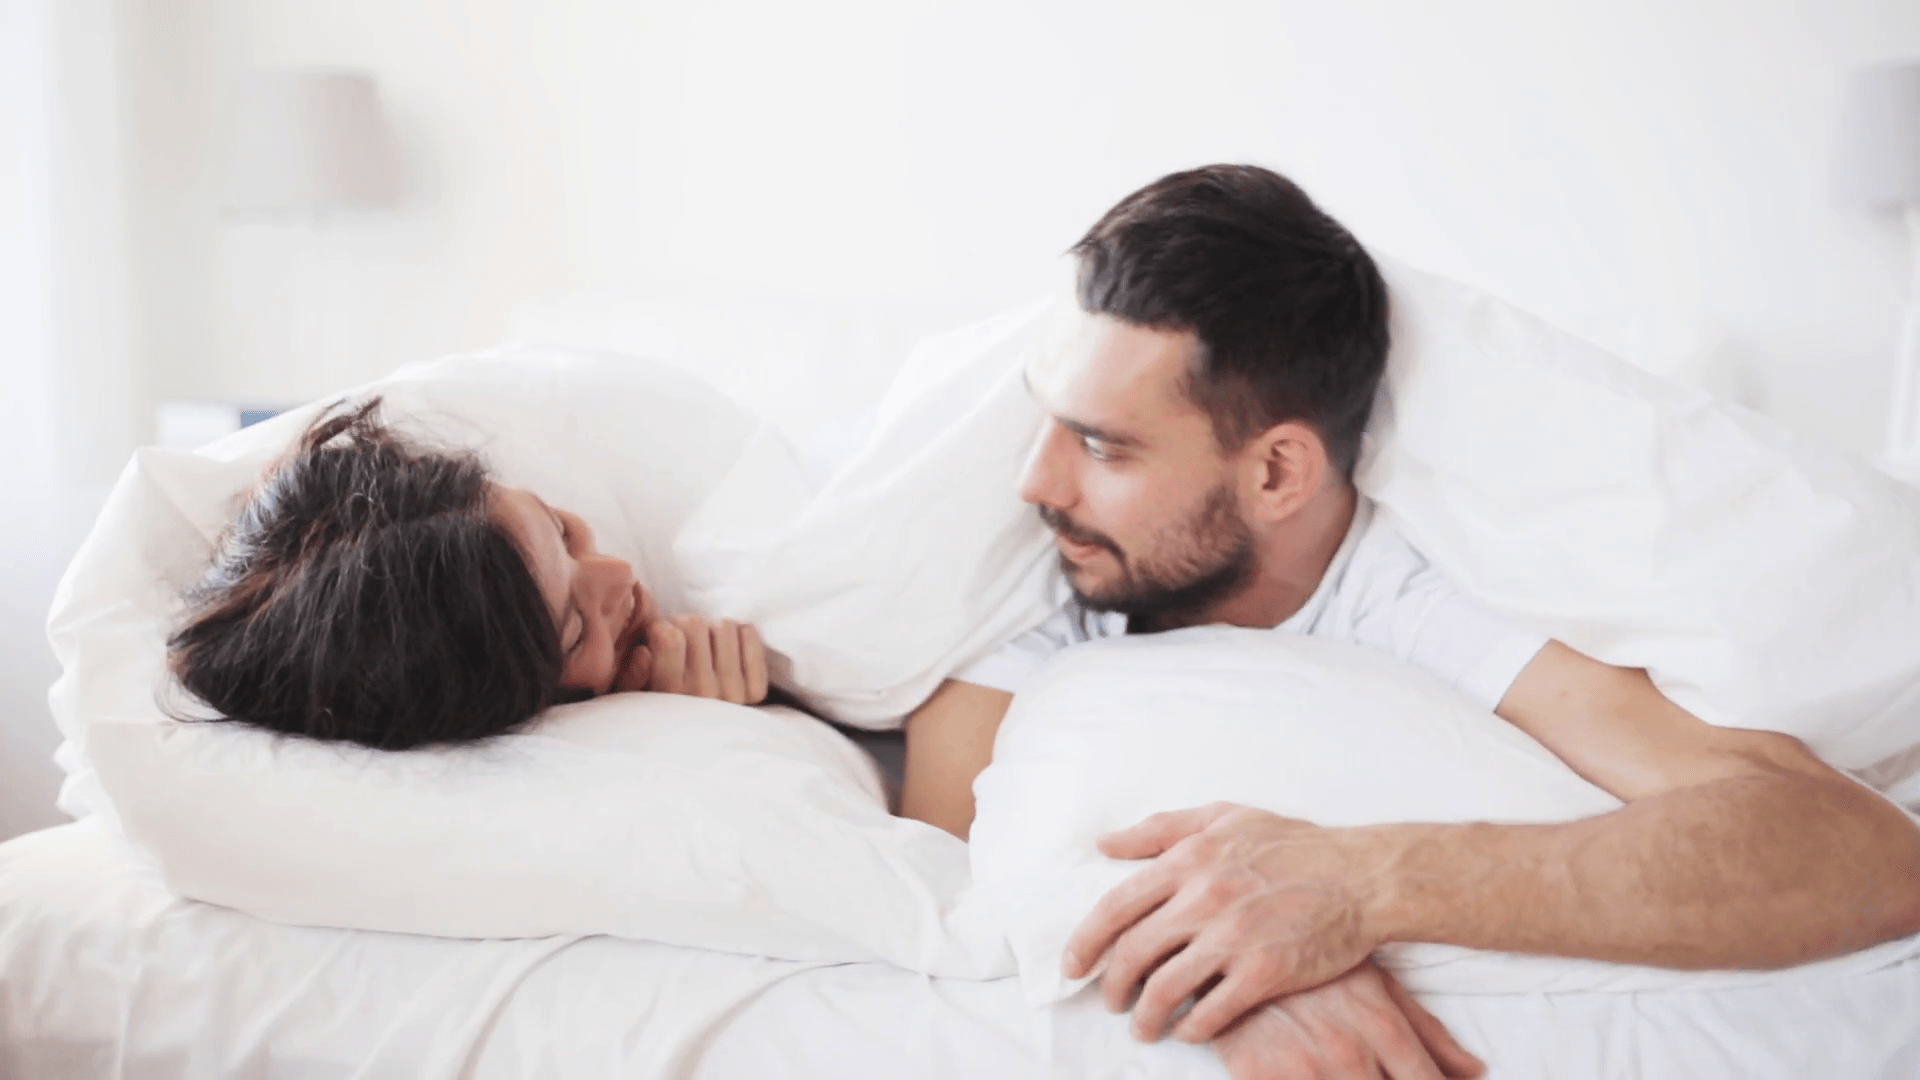 3 geheime Schlüssel für befriedigenden Sex auch nach Jahren der Ehe